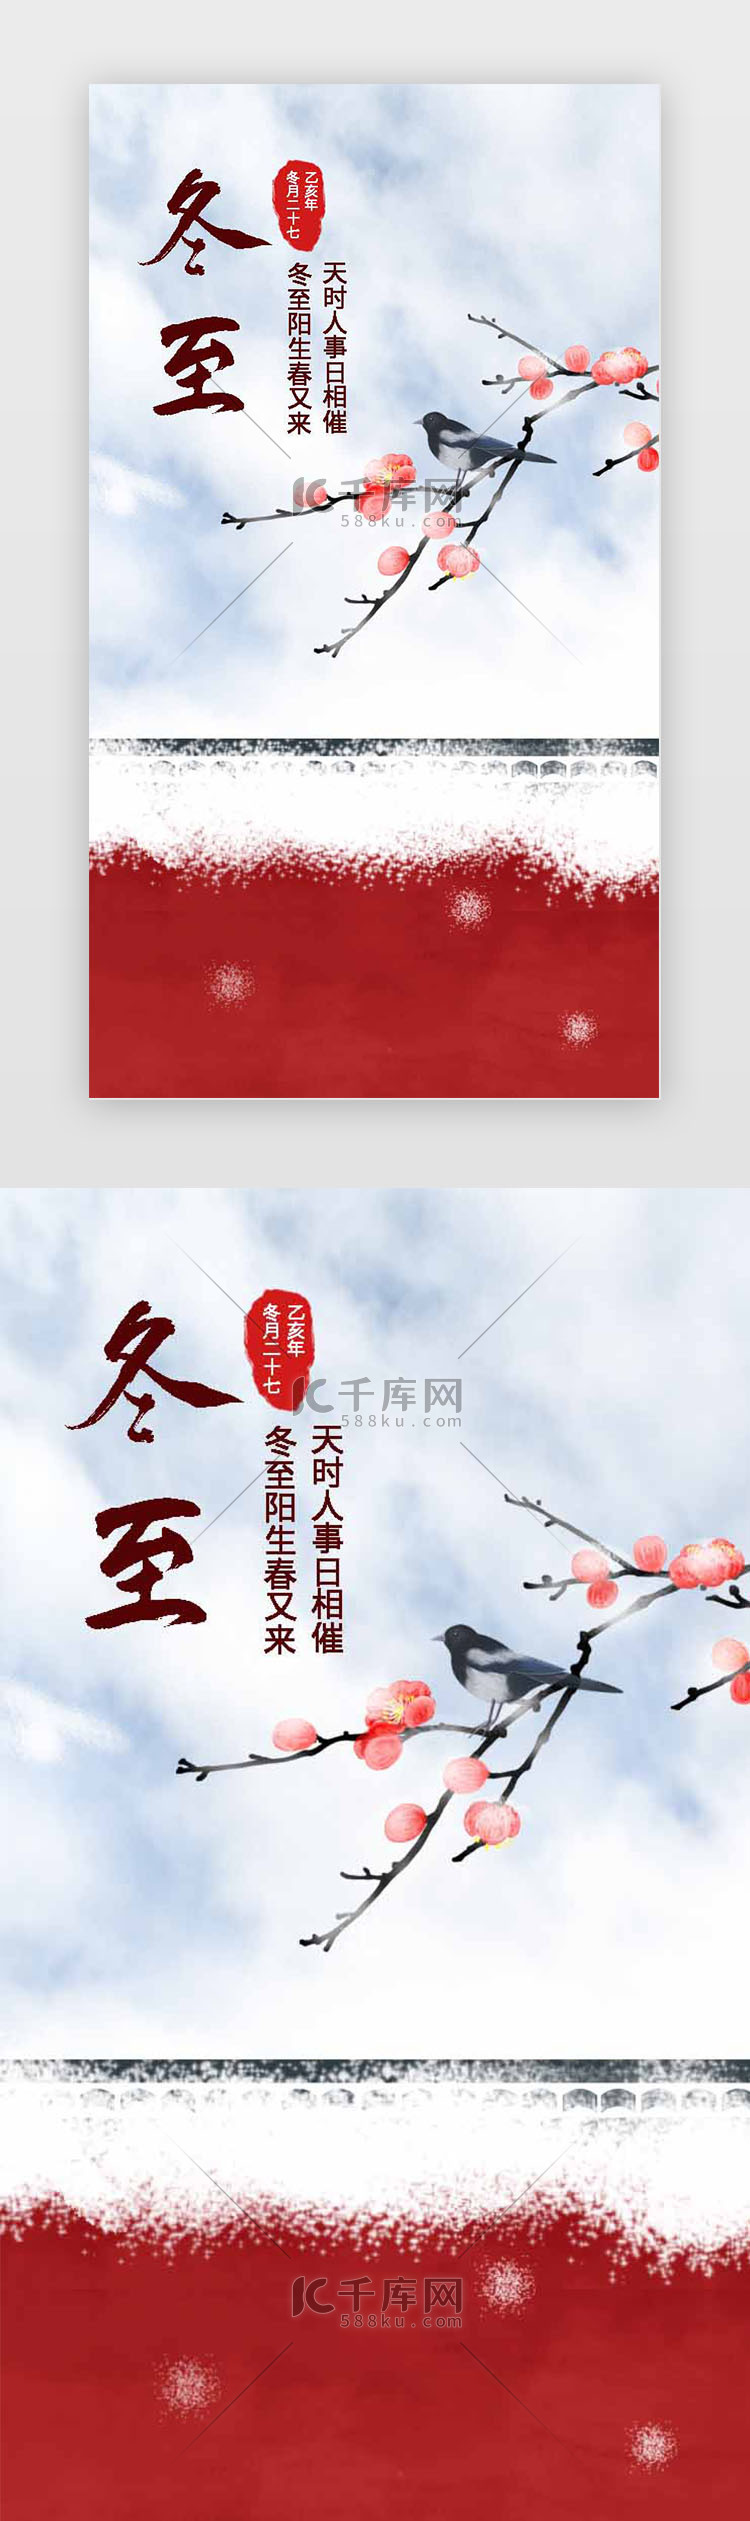 红白红墙雪景中国风大气冬至节日促销闪屏